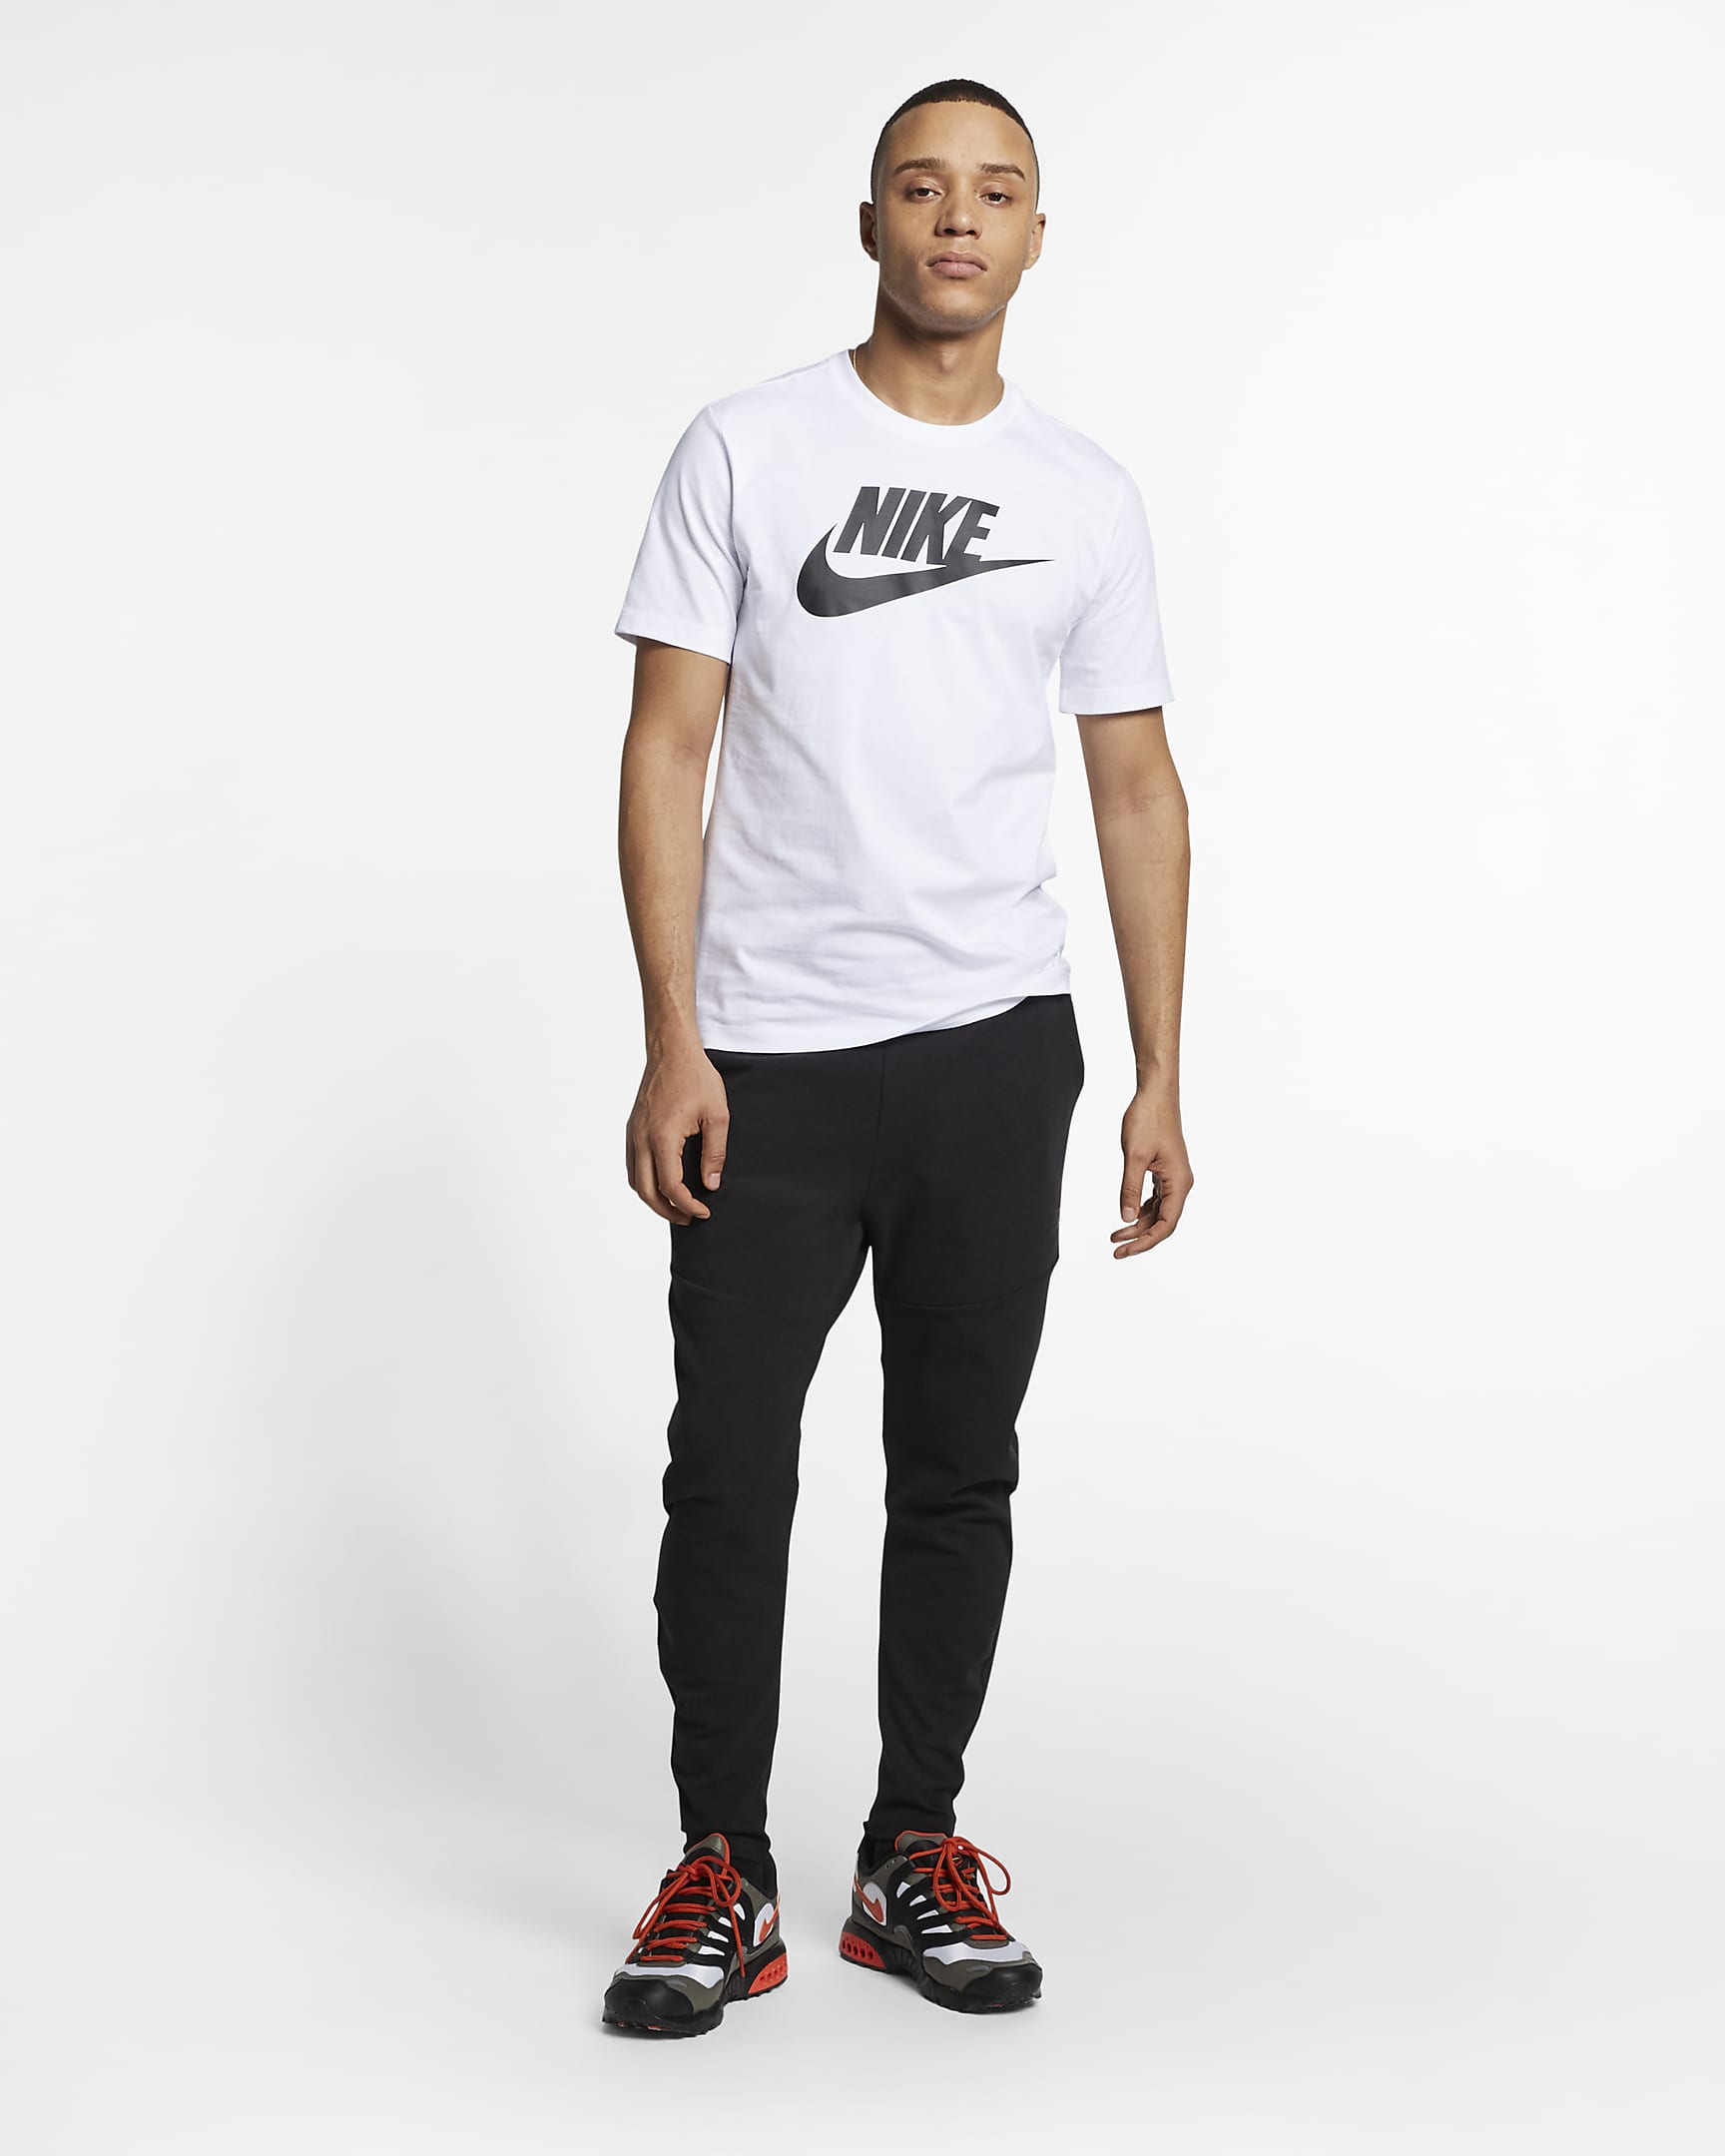 Nike Sportswear Herren-T-Shirt - Weiß/Schwarz